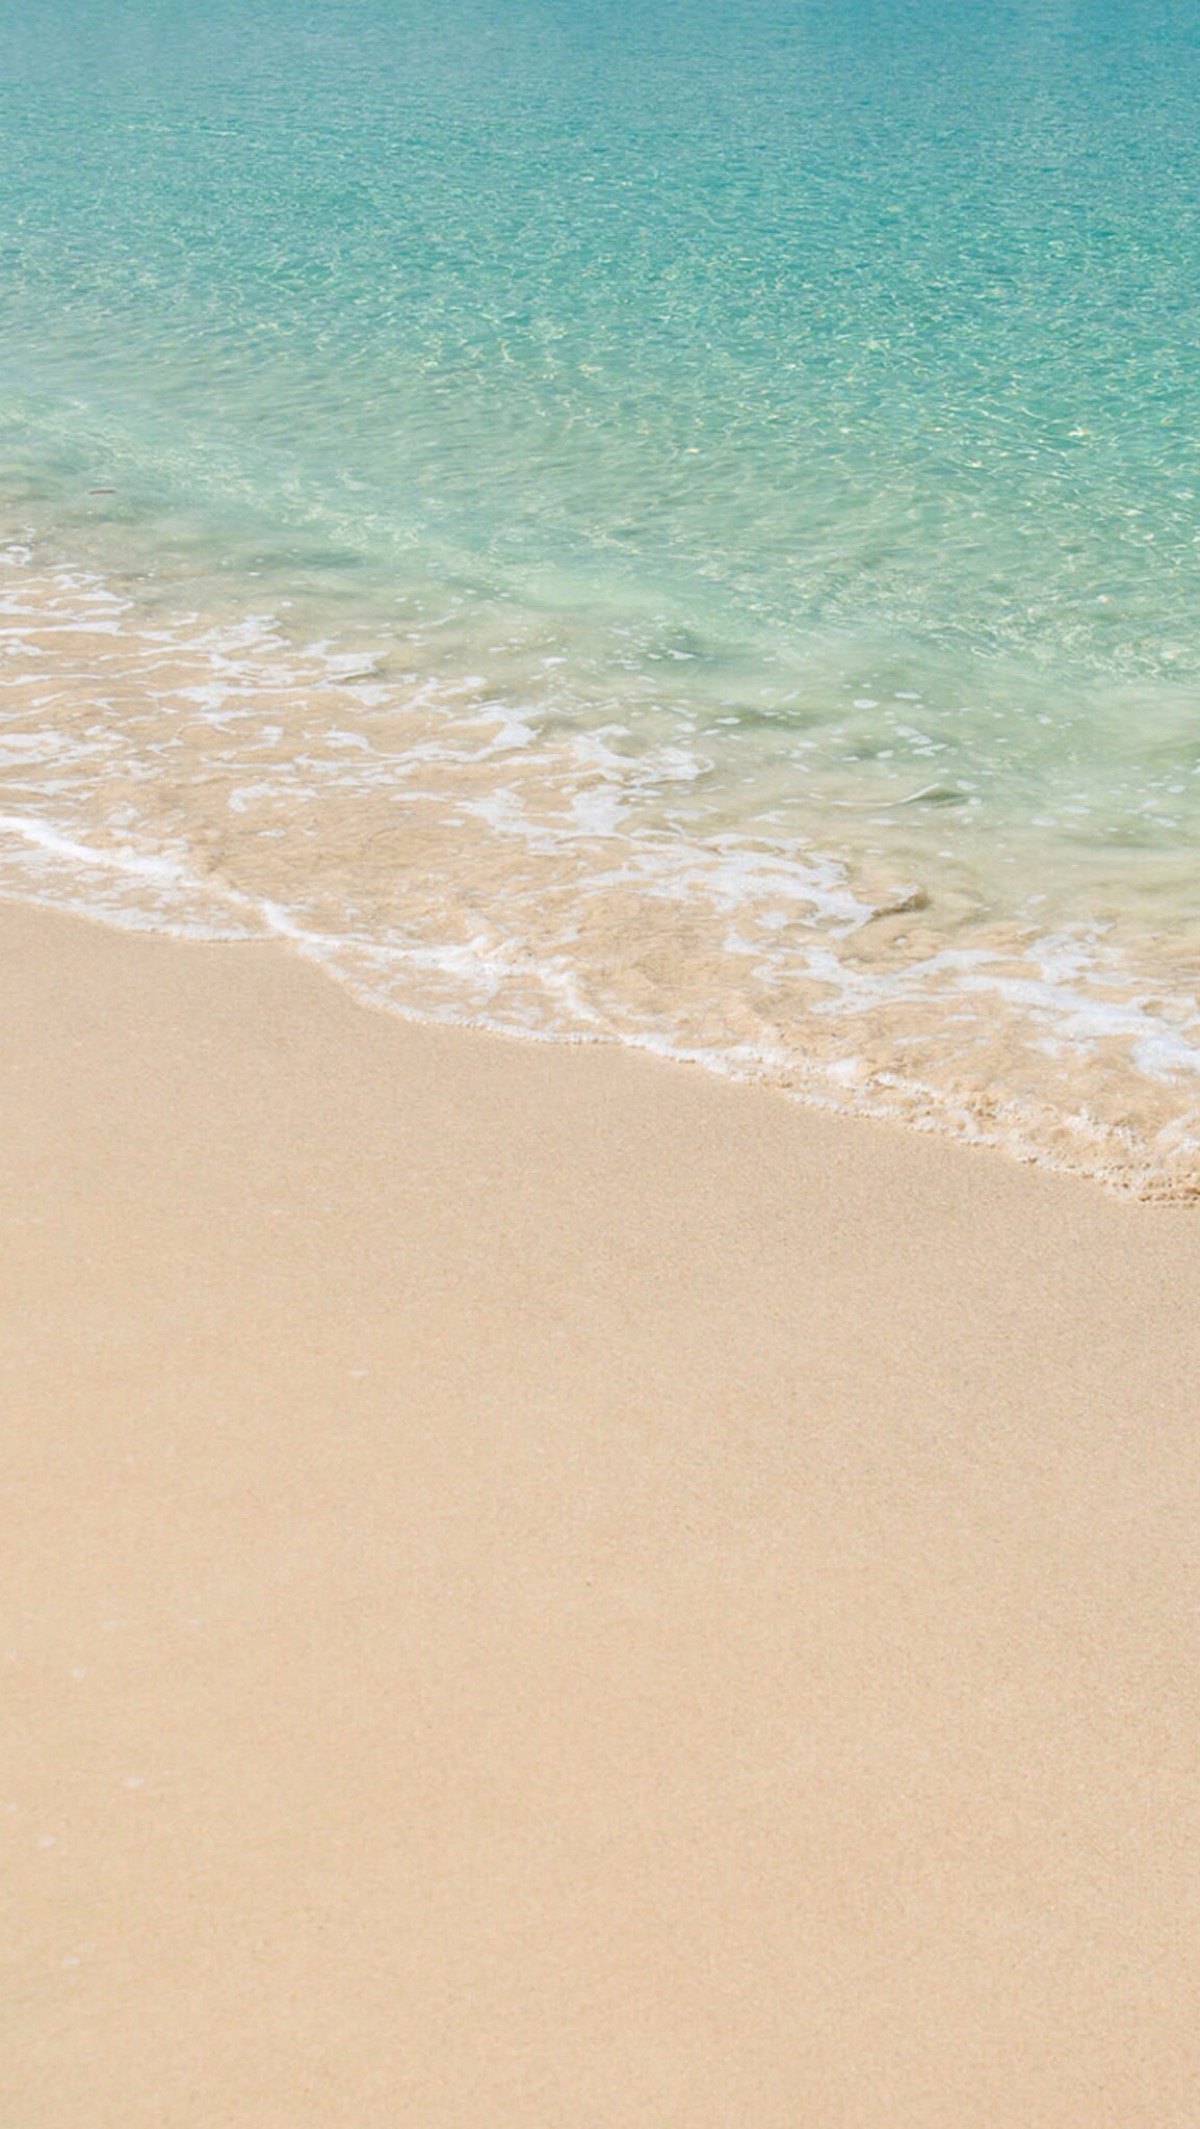 蓝天碧海 海洋 沙滩 唯美风景 iphone手机壁纸 唯美壁纸 锁屏